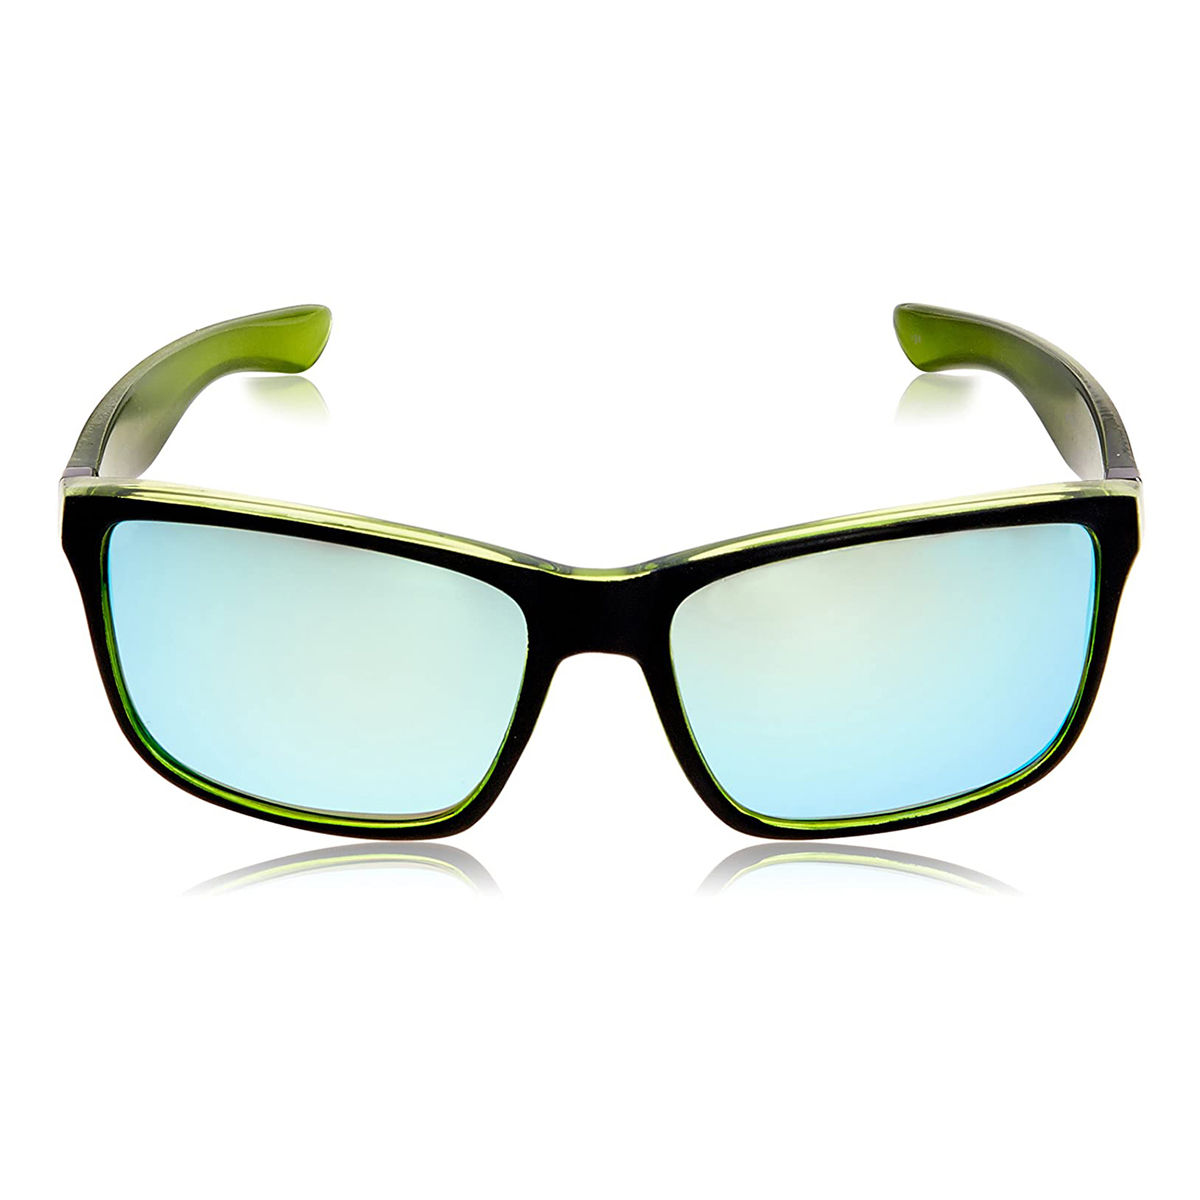 Invu Sunglasses Rectangular Sunglass With Green Lens For Men